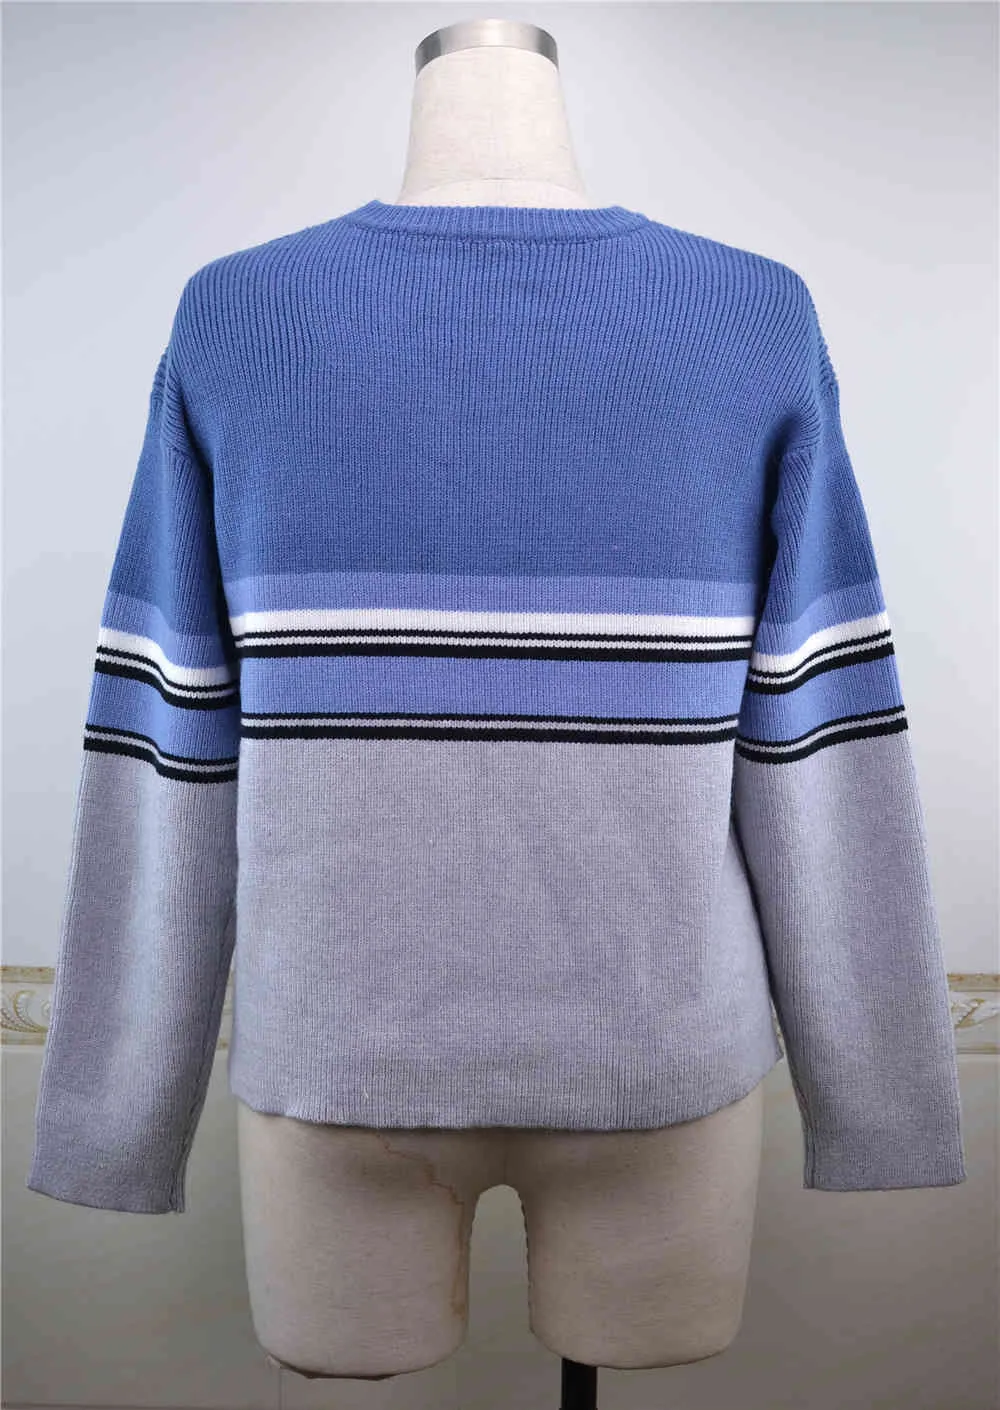 Foridol Blue Striped Pullover Maglione Donne Vintage Breve Casual Maglione Maglione Atumn Winter Pullover Tops 210415